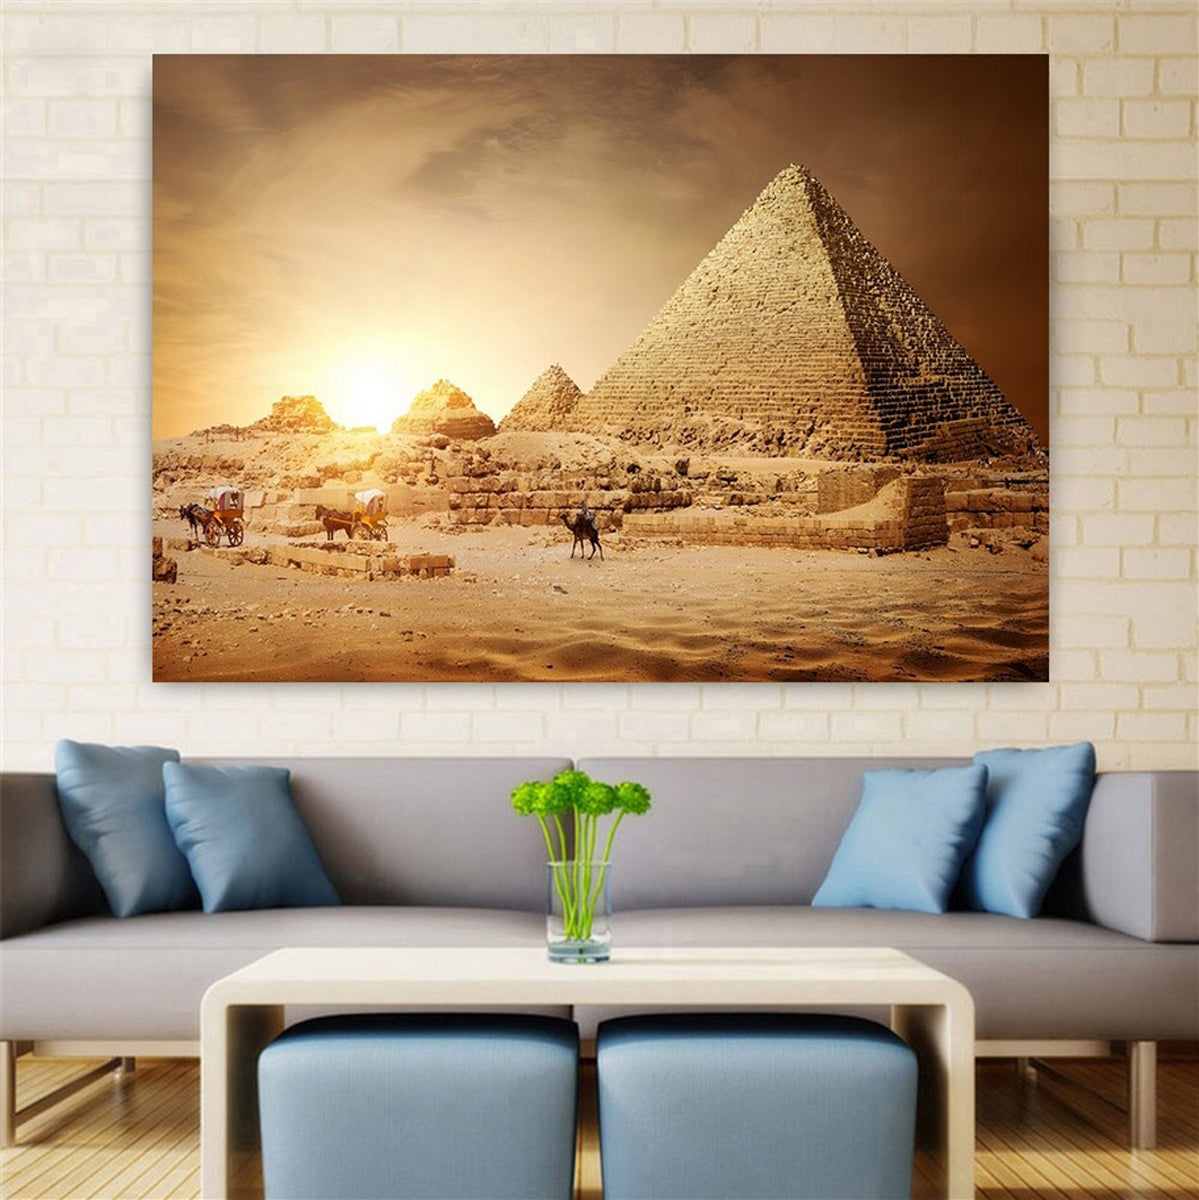 TPFLiving Poster Leinwand / Ägyptische Landschaften, Wüste, Pyramiden, Sphinx / Verschiedene Größen - OHNE Rahmen - Modell 1006097392